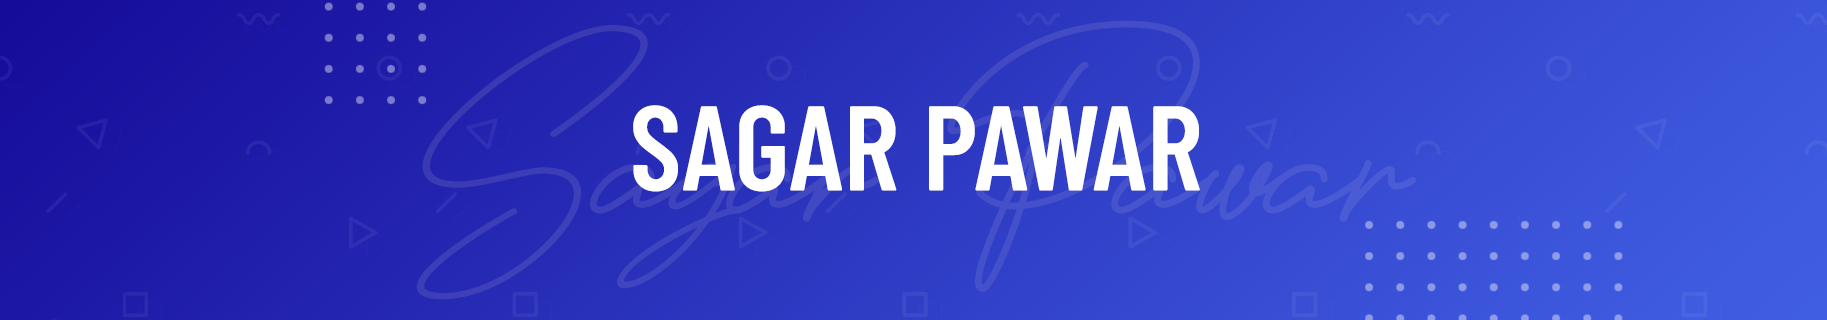 Sagar Pawar's profile banner